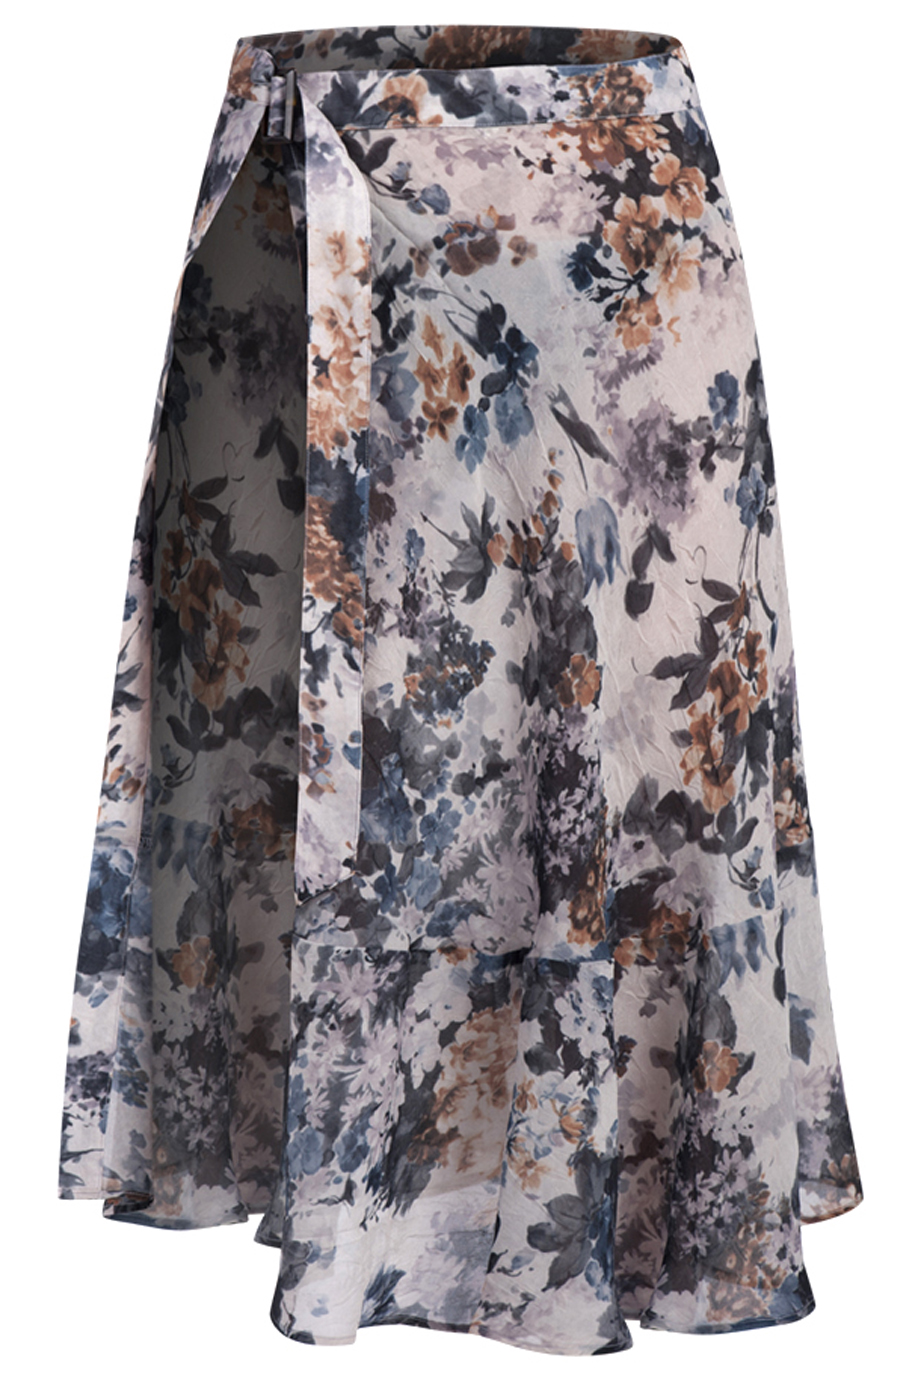 Chân váy cuốn xòe cài khoen đai mặc kết hợp đầm sơ mi in hoa be- nâu- trắng- Alice Suit Wrap Skirt/ GBB